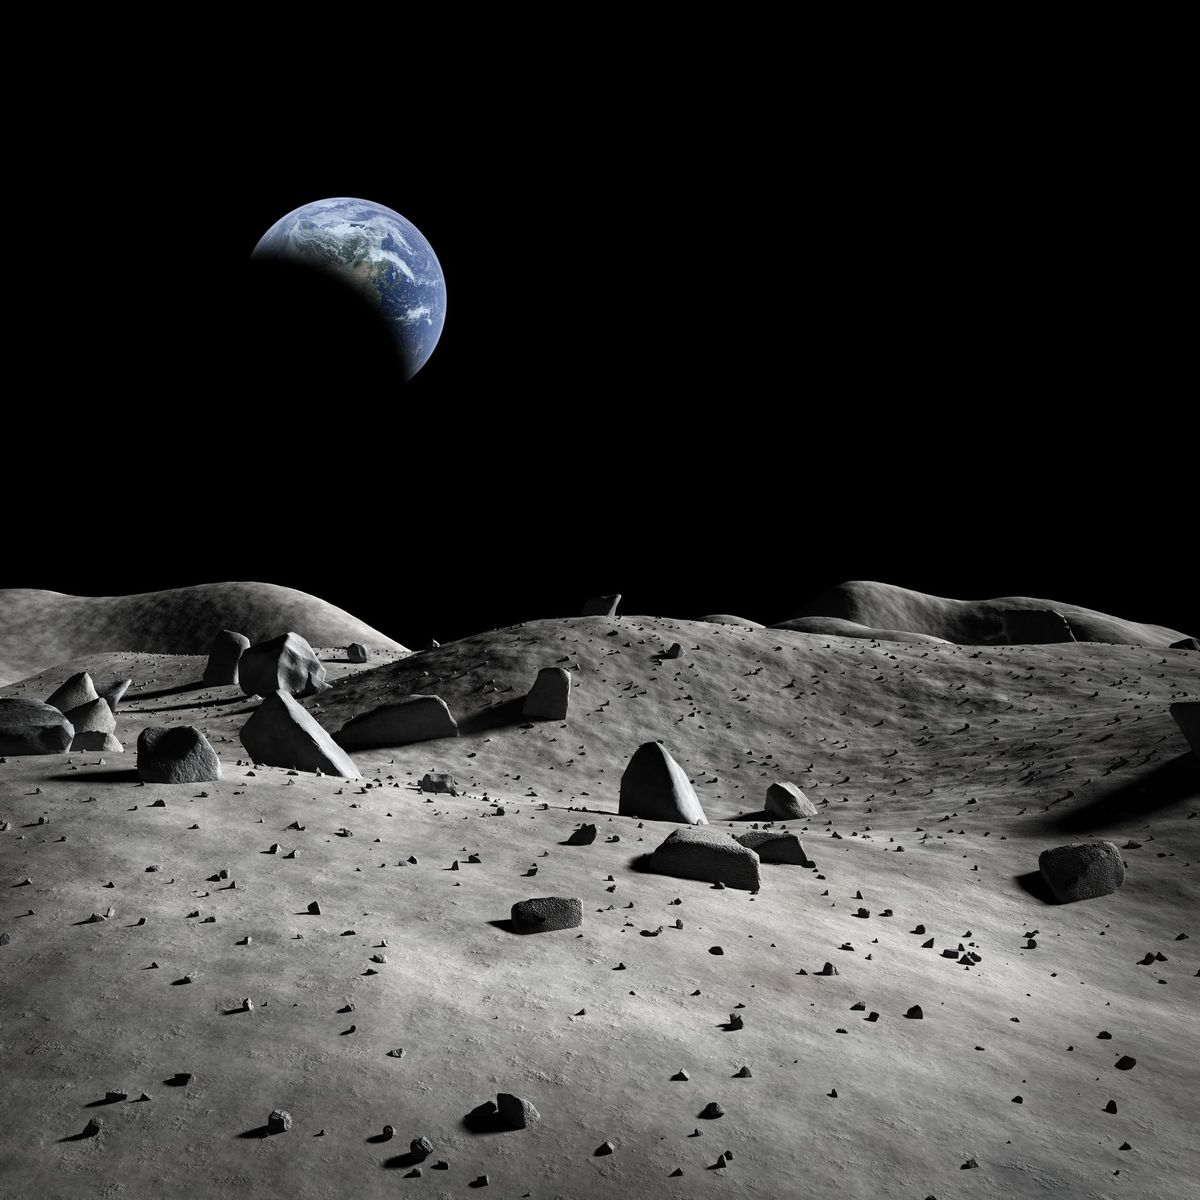 Indie wystrzeliły sondę na Księżyc. Sprawdź, jaki jest cel misji i kiedy Chandrayaan-2 wyląduje na srebrnym globie